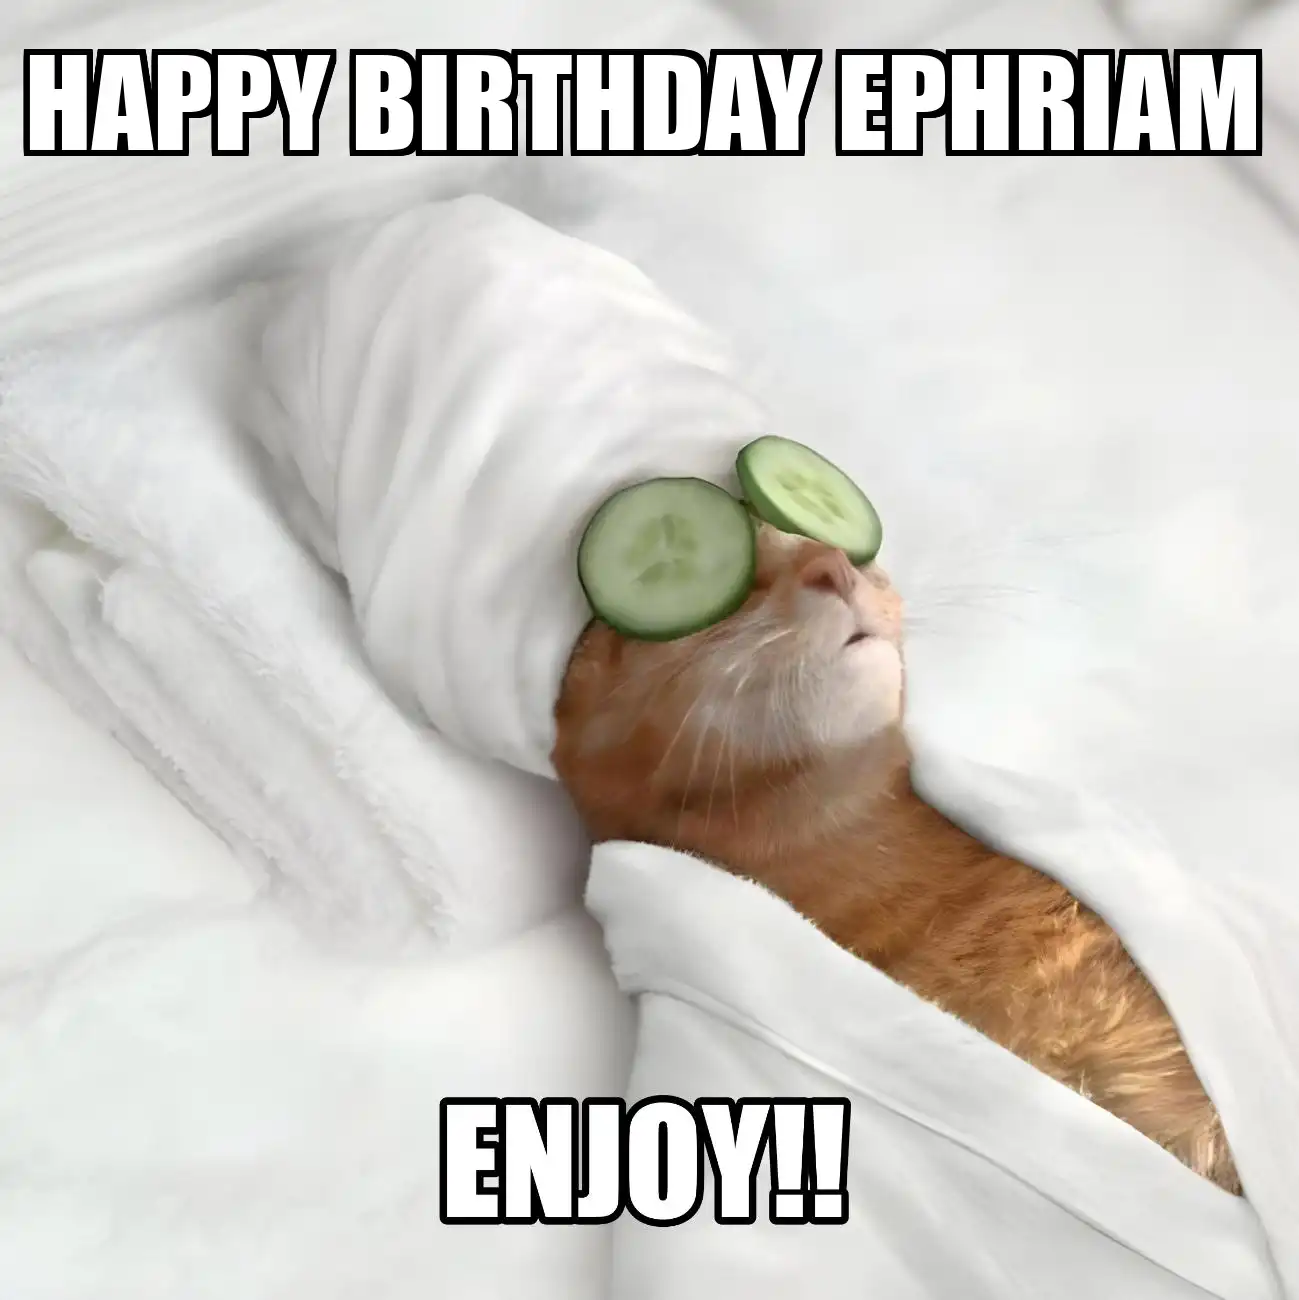 Happy Birthday Ephriam Enjoy Cat Meme